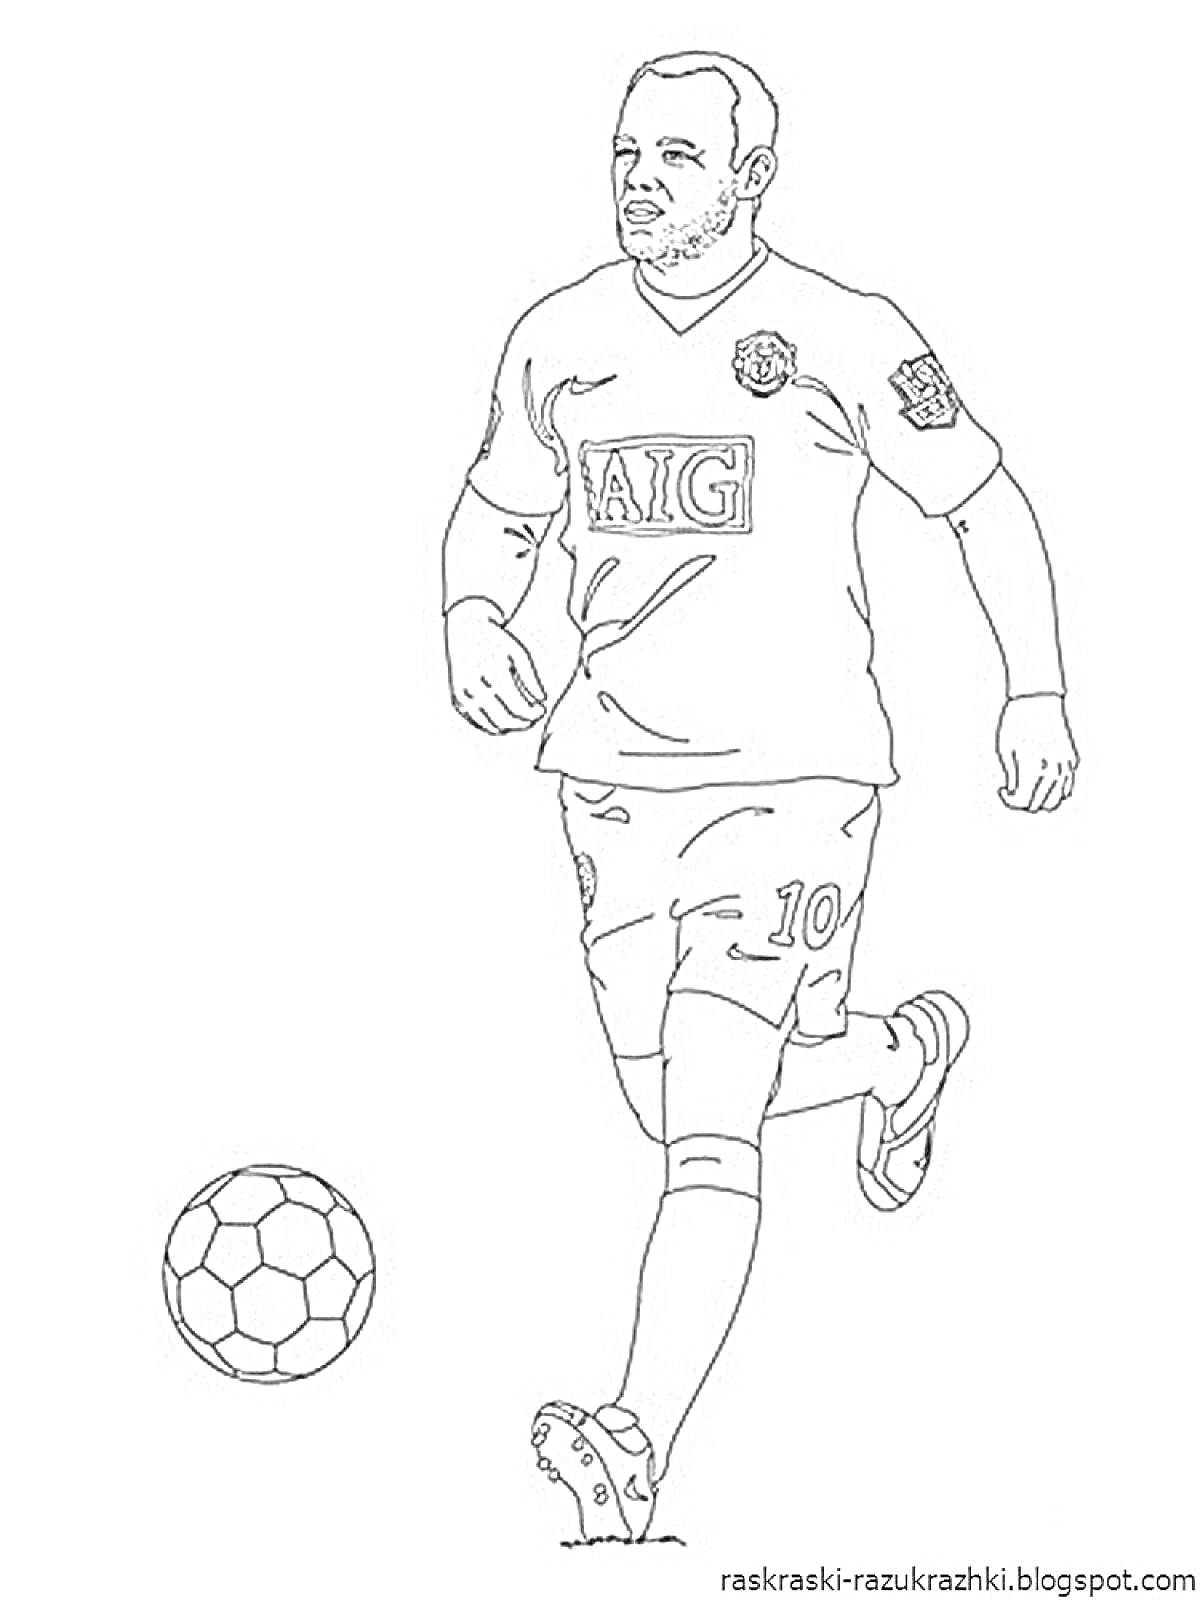 Раскраска Футболист в футболке с логотипом AIG и номером 10, бежит с мячом